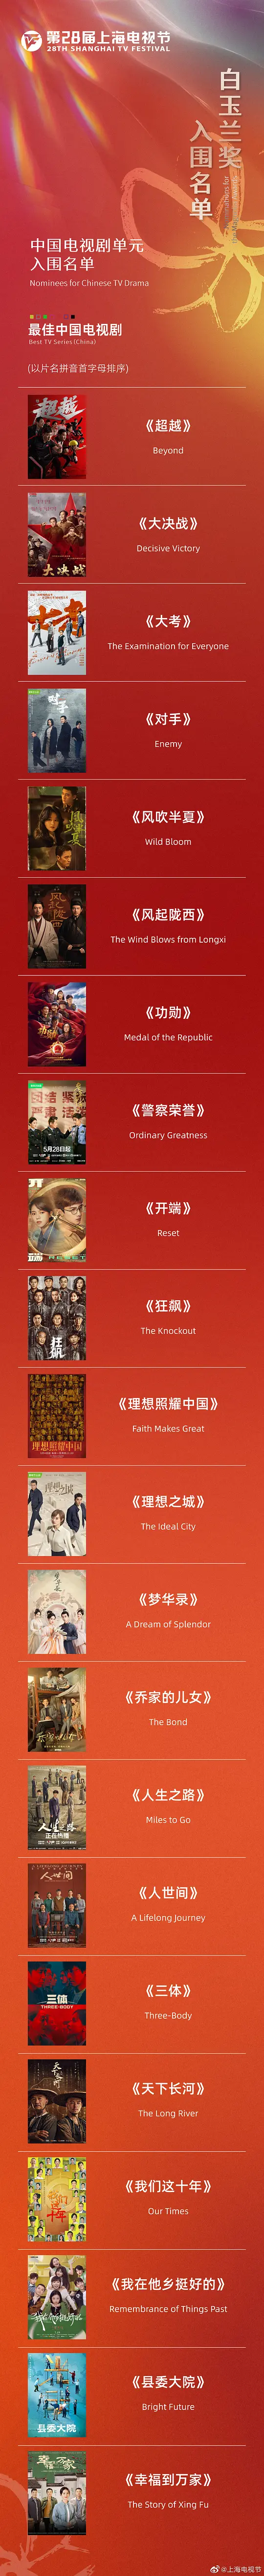 第28届上海电视节颁奖典礼电影在线完整观看